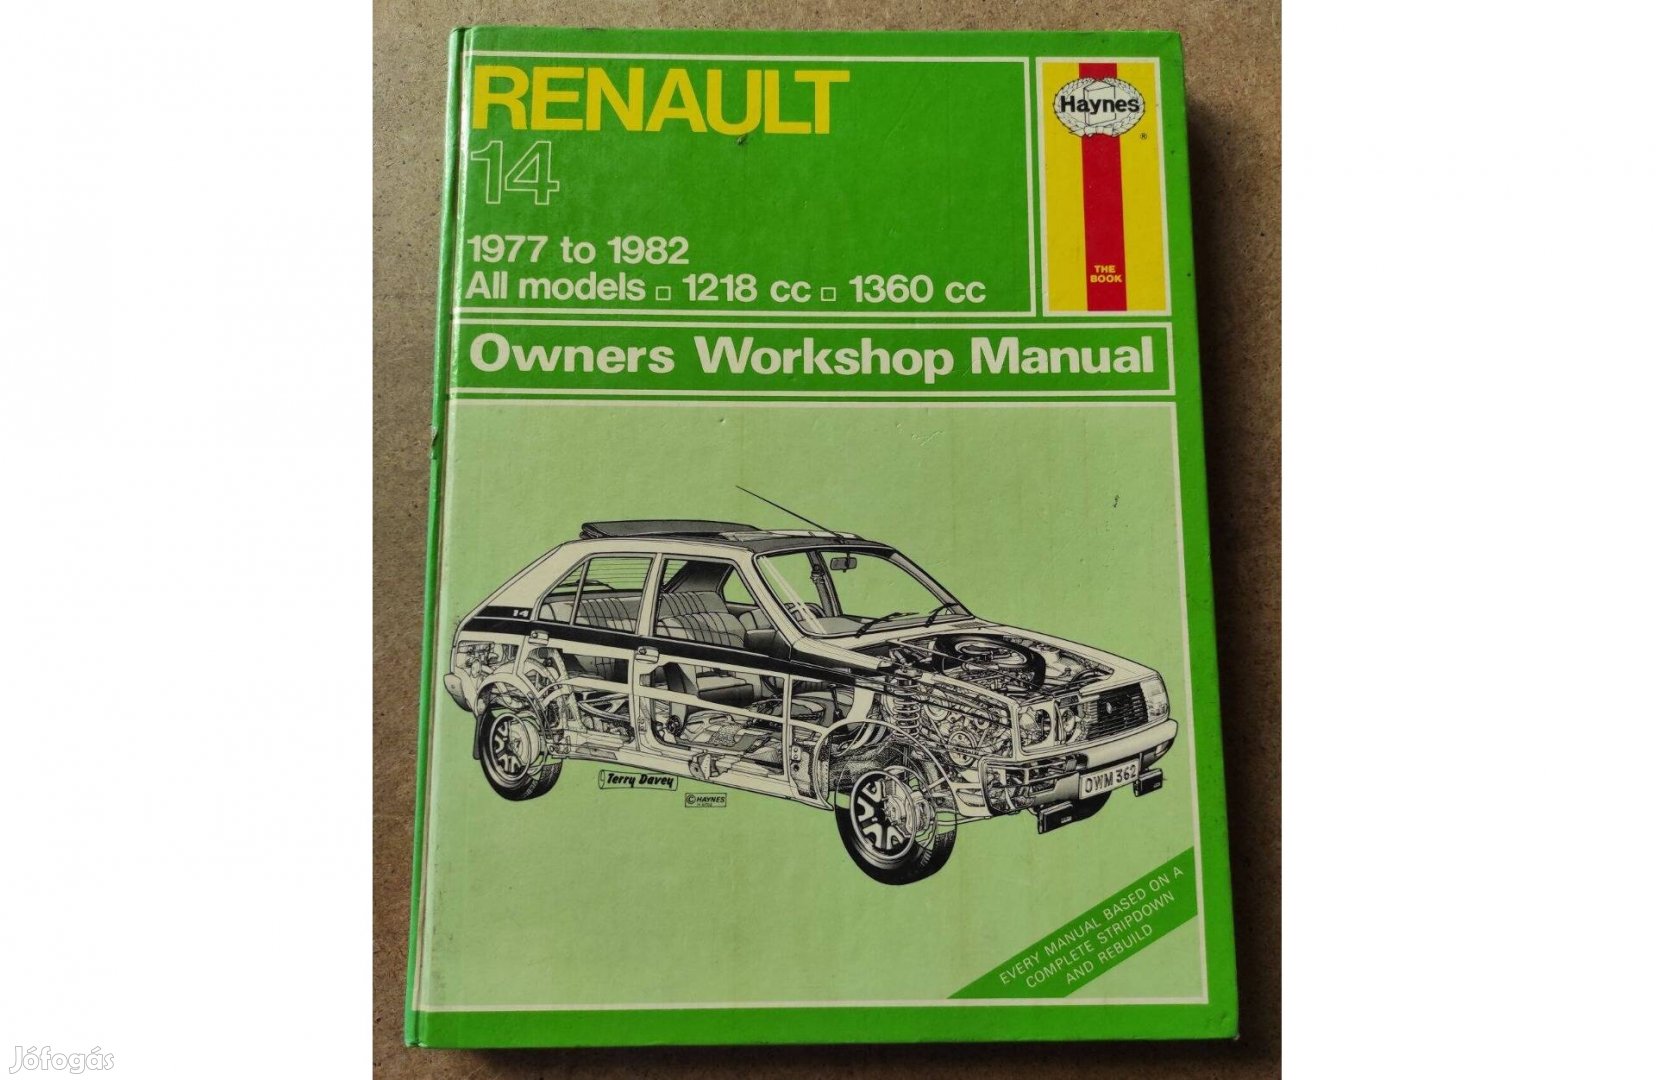 Renault 14 javítási karbantartási kézikönyv